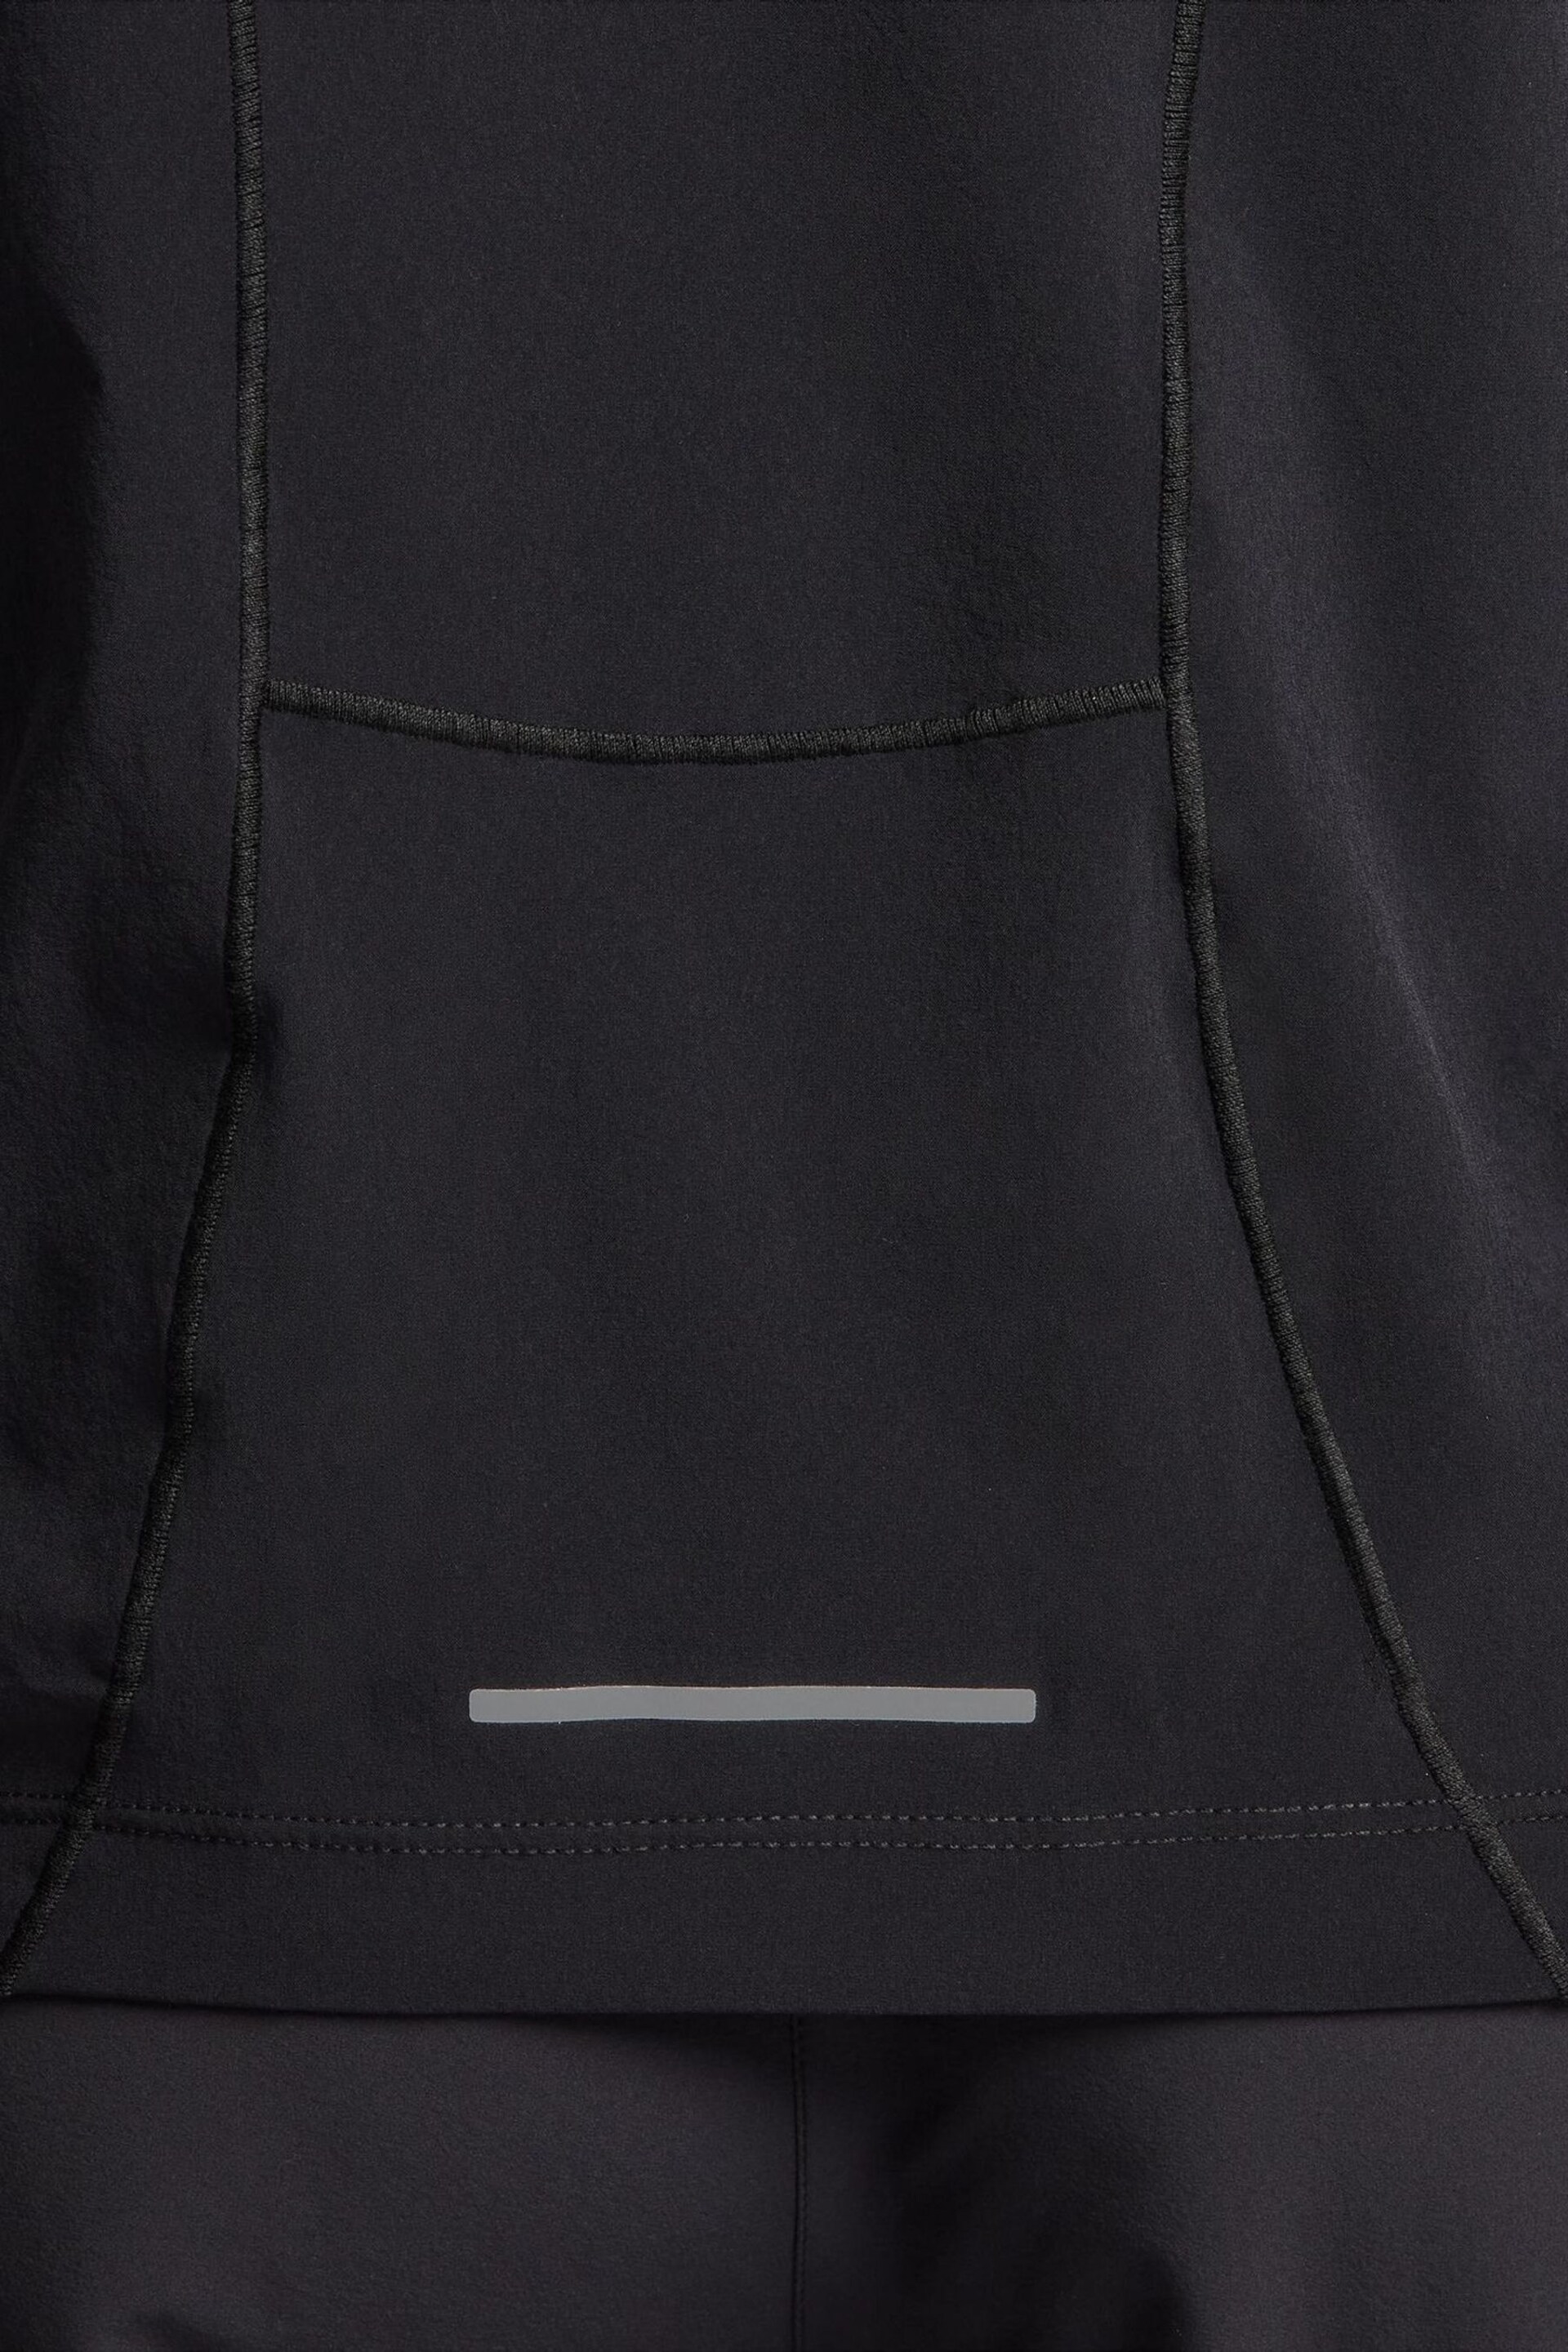 Nike Coal Black Swift UV Running Jacket - Image 6 of 9